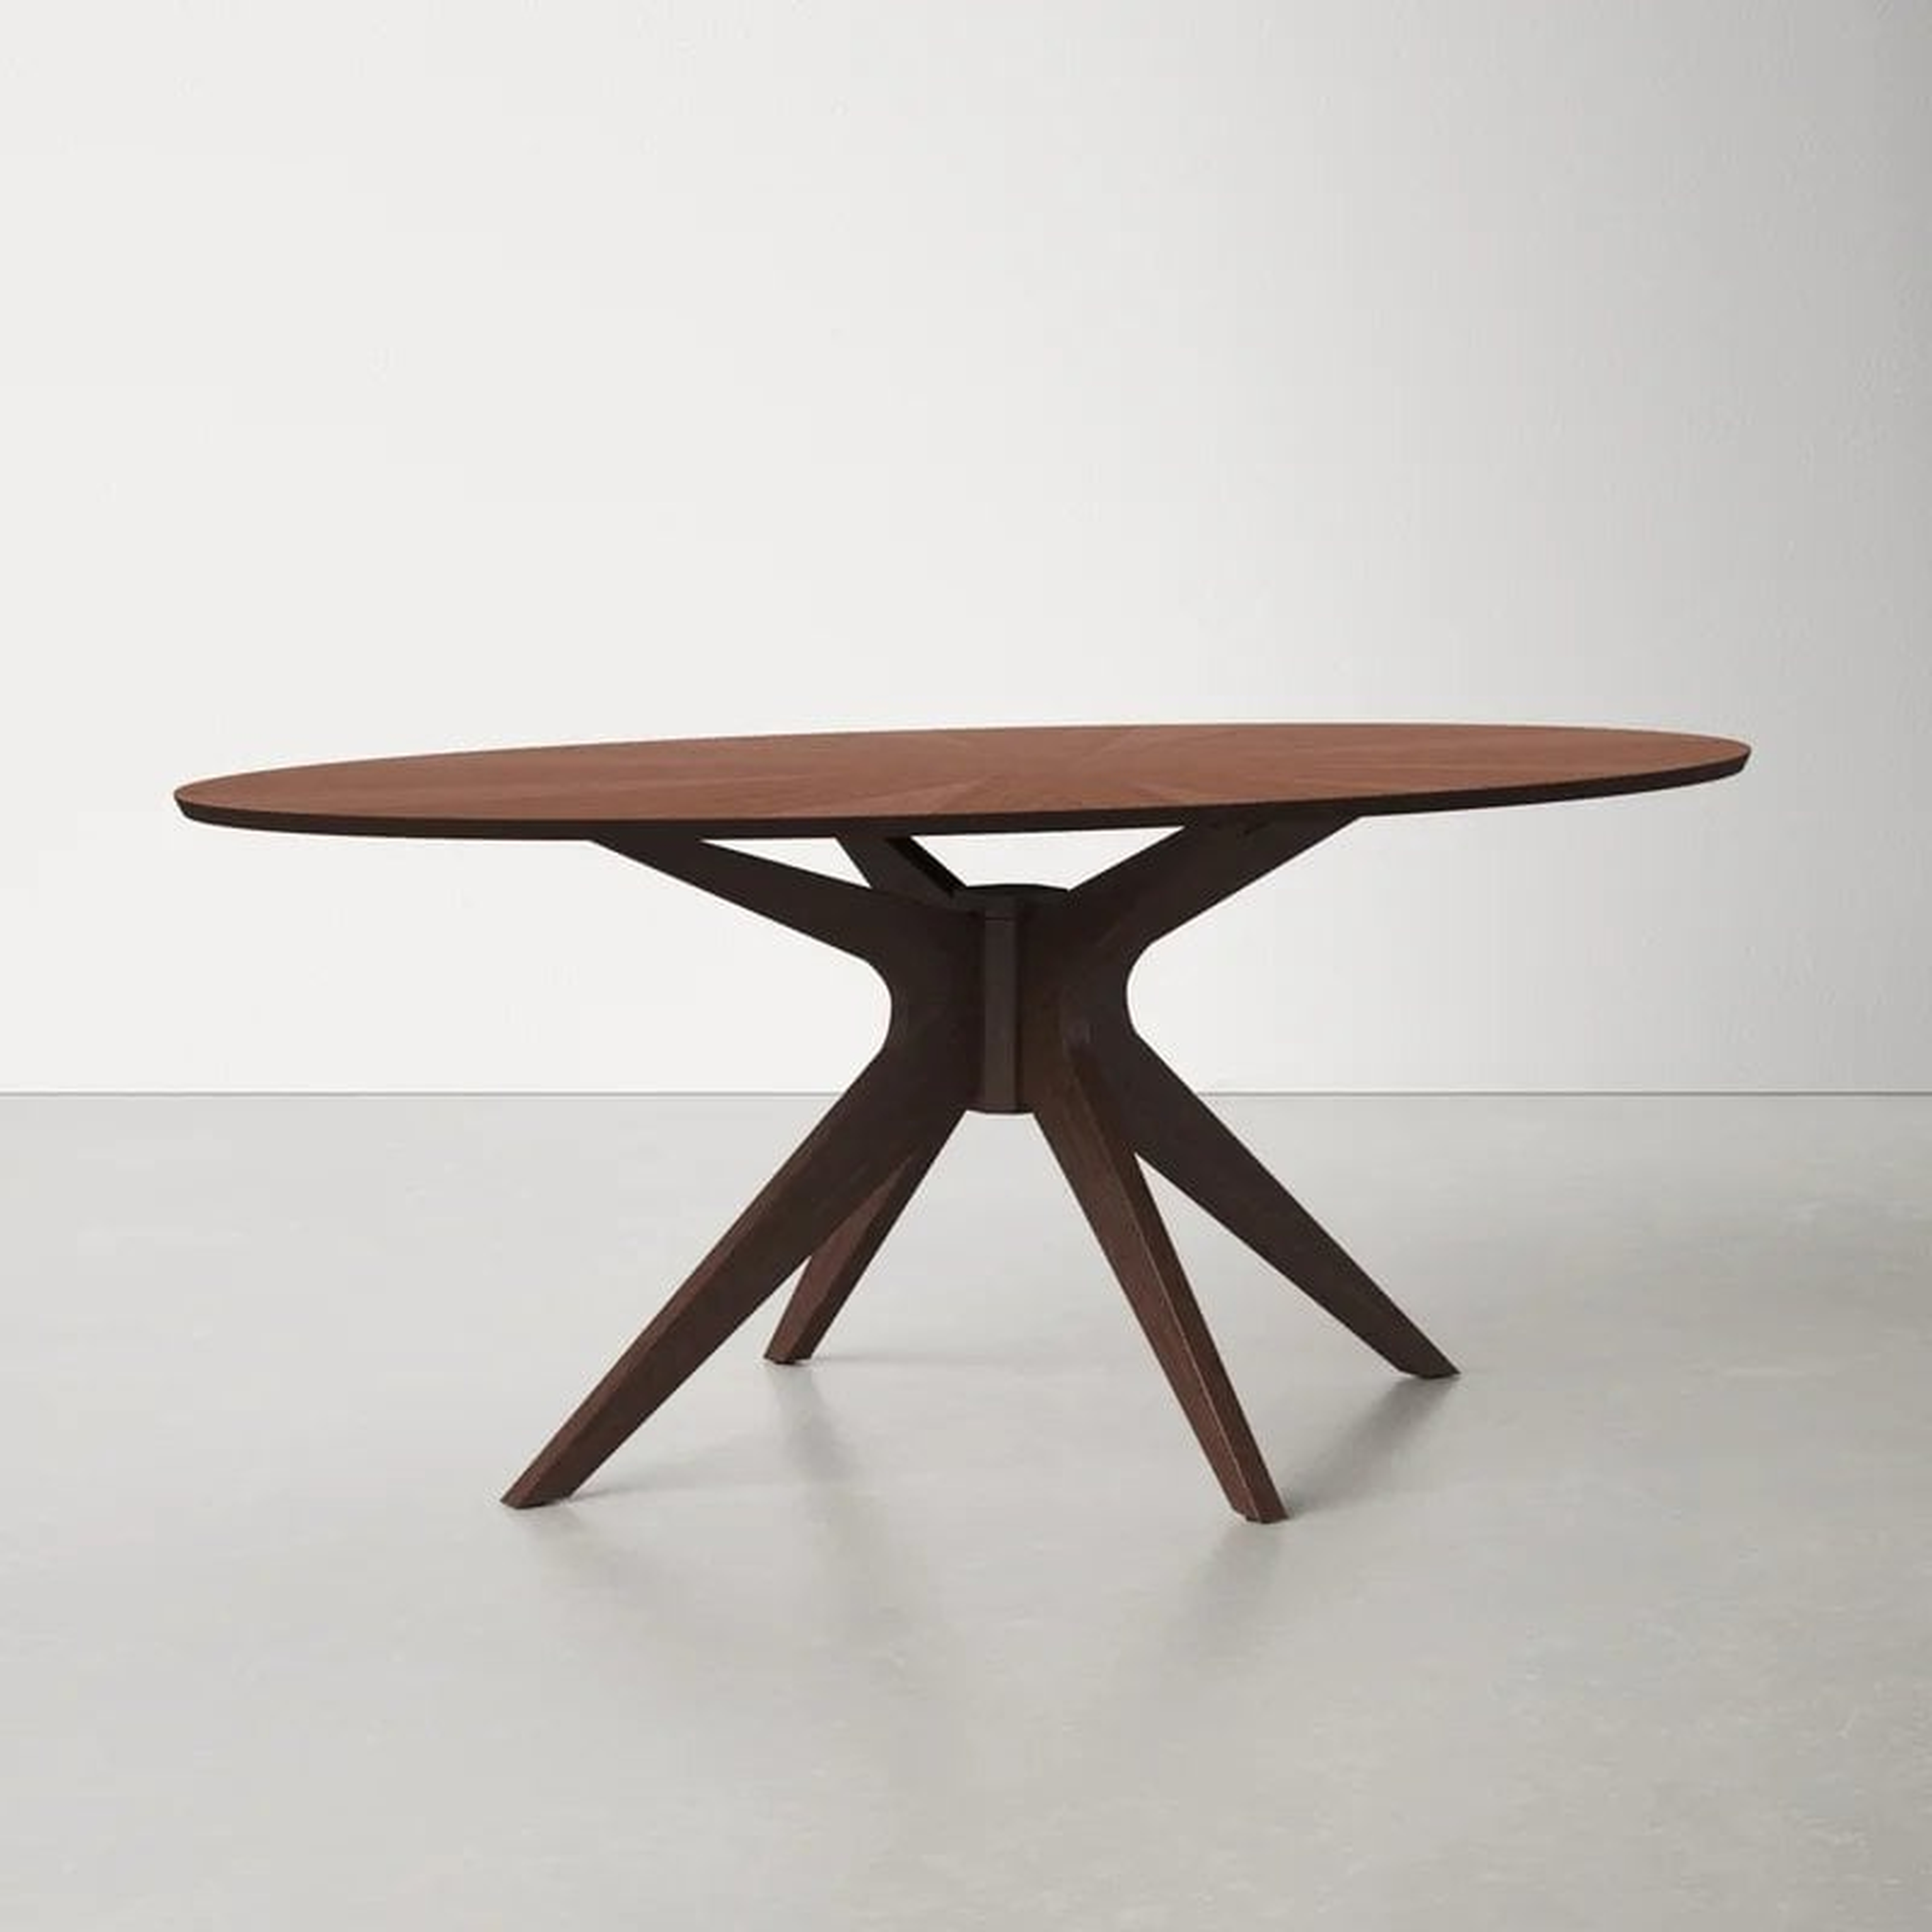 Thomas Pedestal Coffee Table - Wayfair